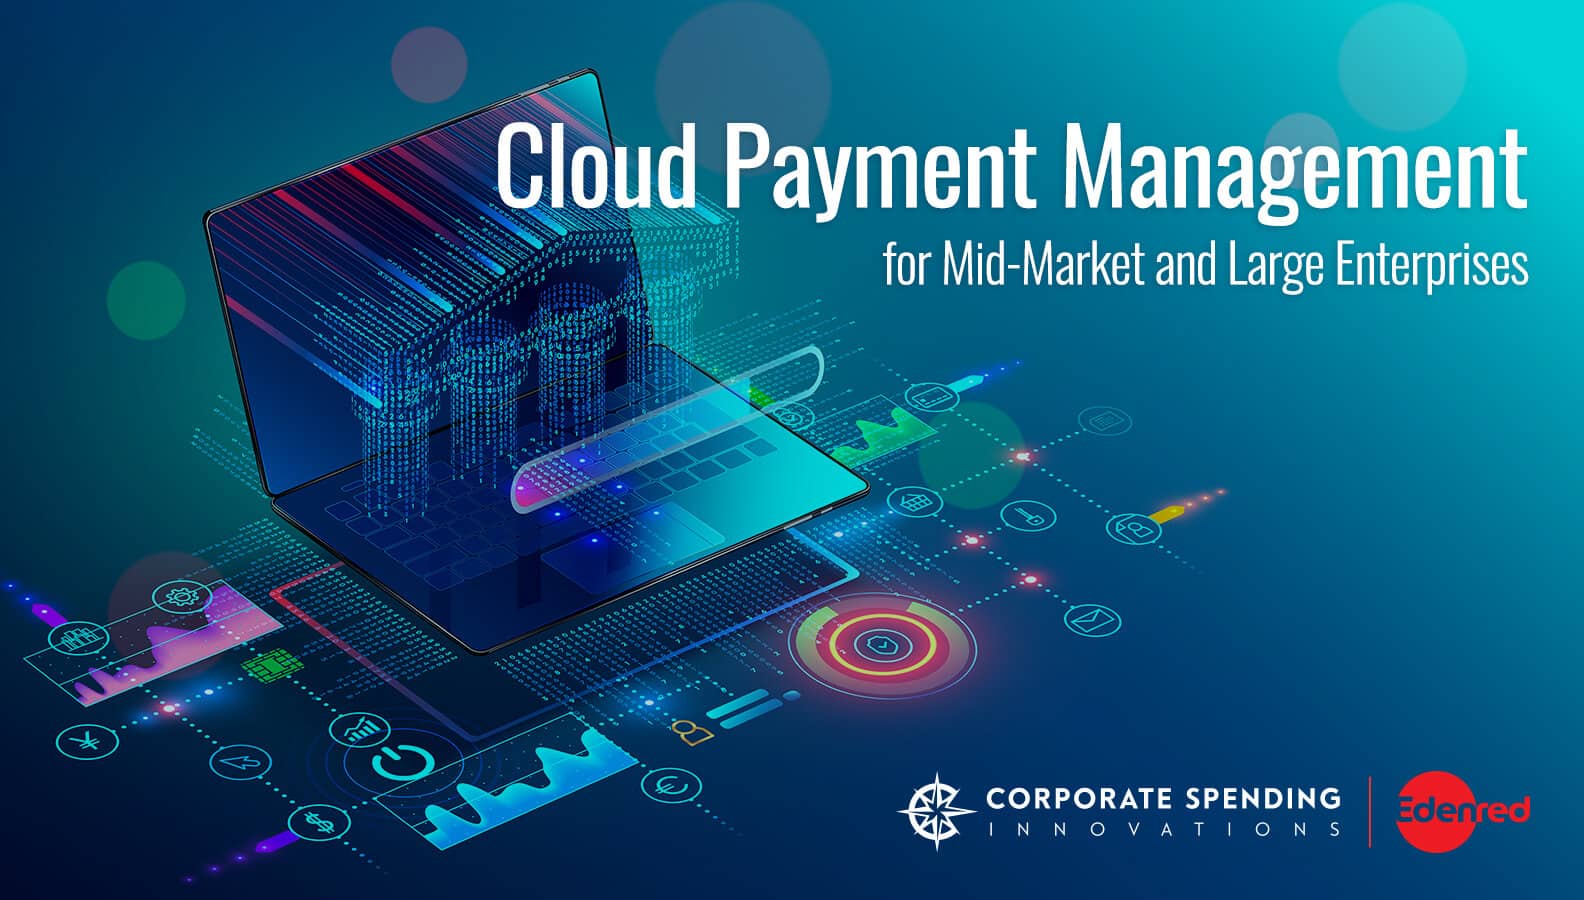 Cloud Payment Management for Mid-Market and Large Enterprises